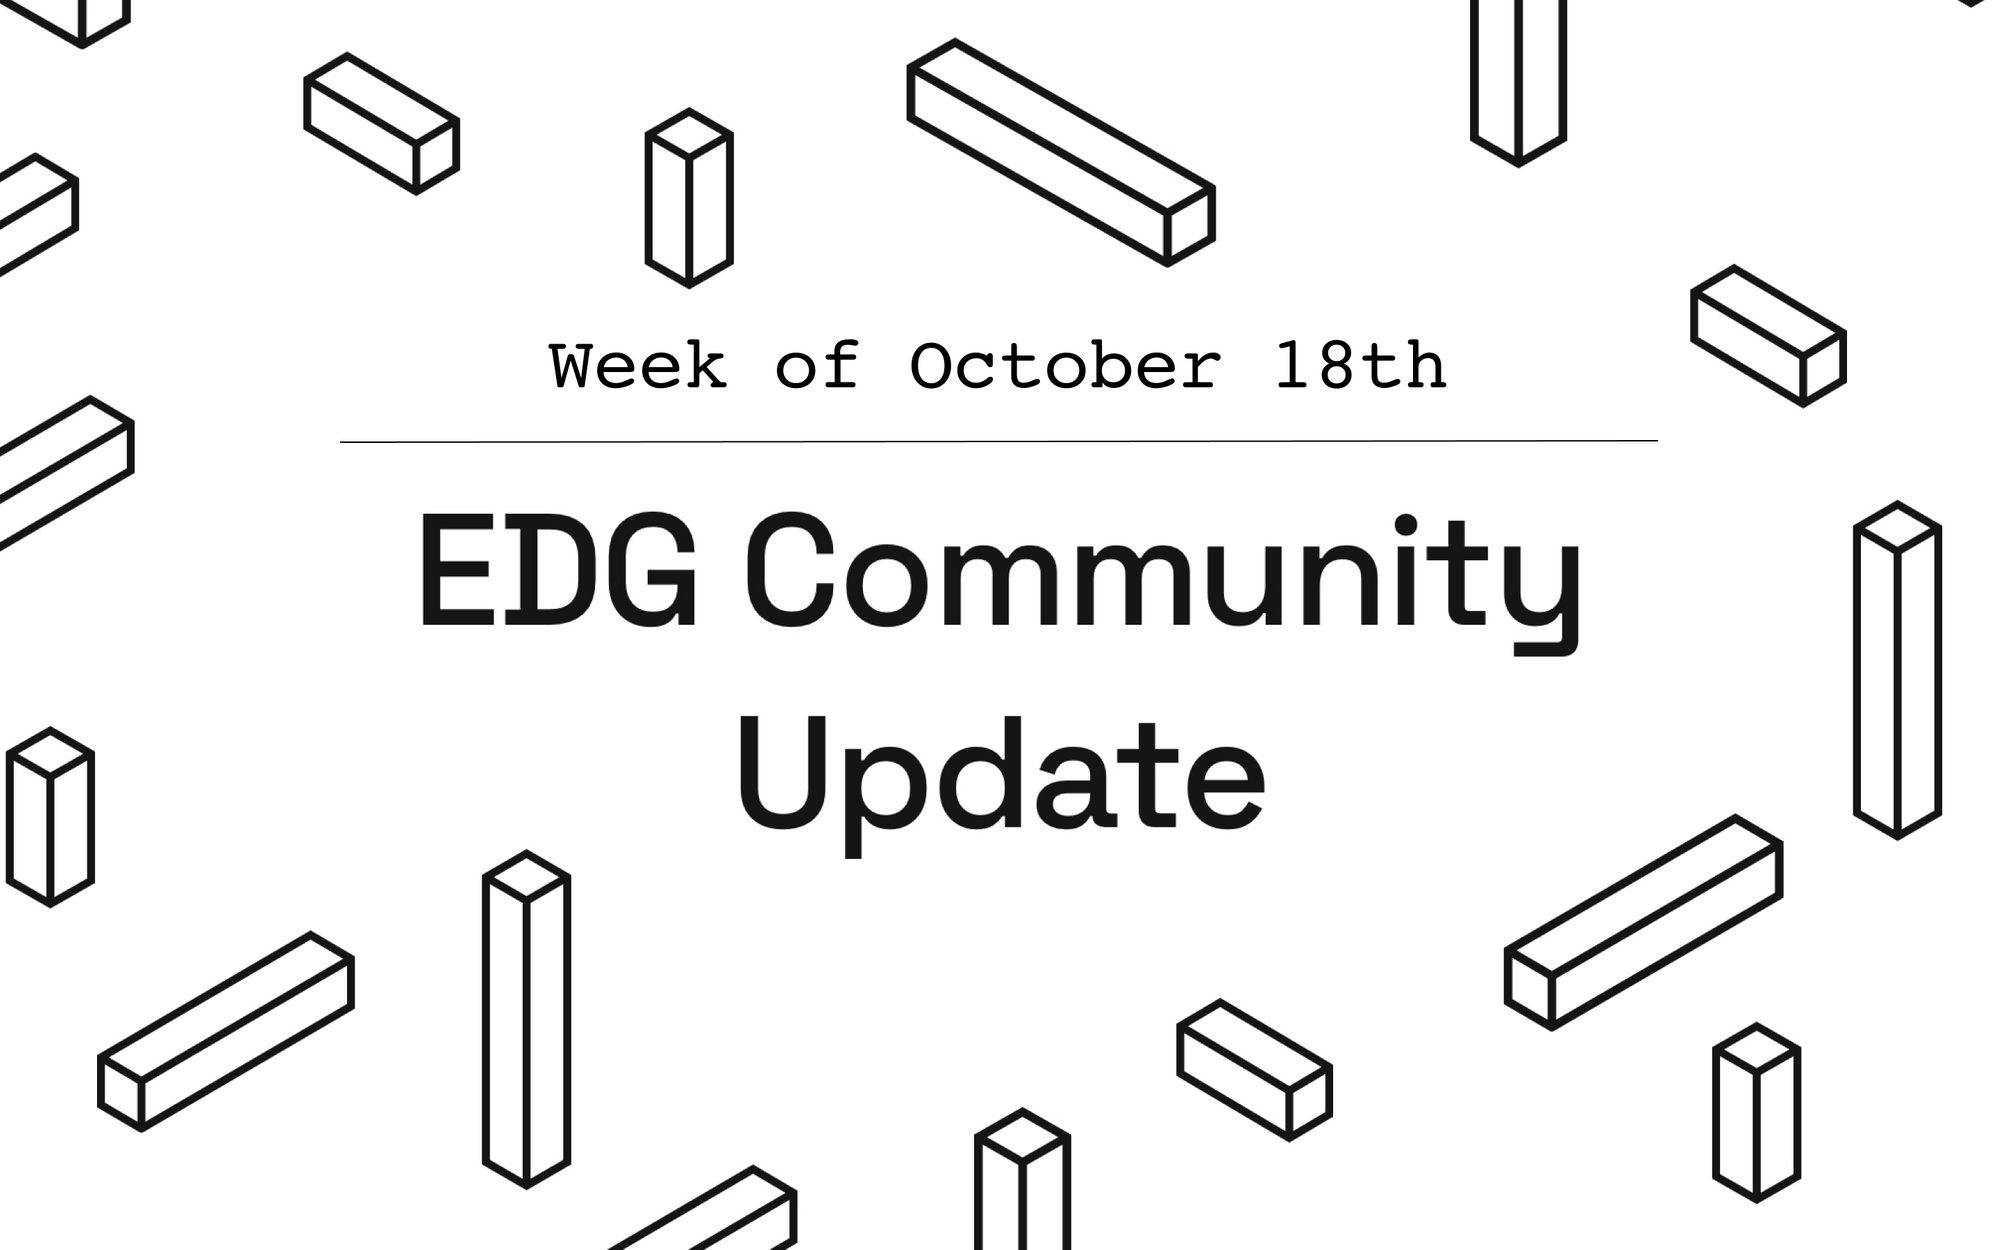 EDG Community Update: Week of October 18th